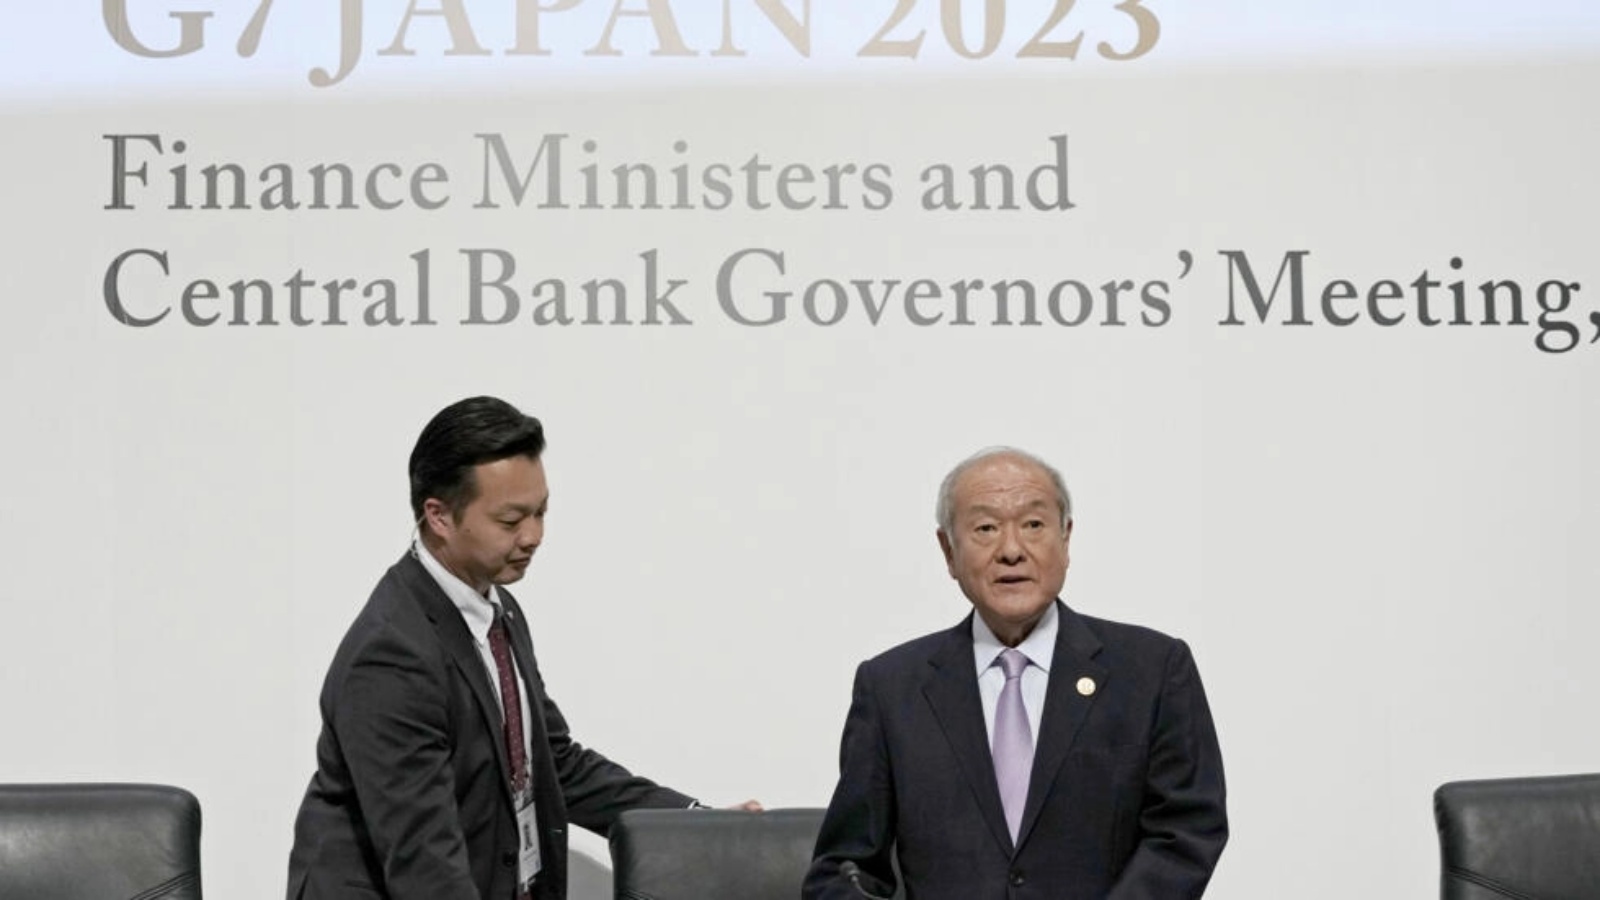 وزير المال الياباني شونيشي سوزوكي (يمين) يستعد لترؤس المؤتمر الصحافي لاجتماع وزراء المال وحكام المصارف المركزية لدول مجموعة السبع في نيغاتا بوسط اليابان في 13 مايو 2023 